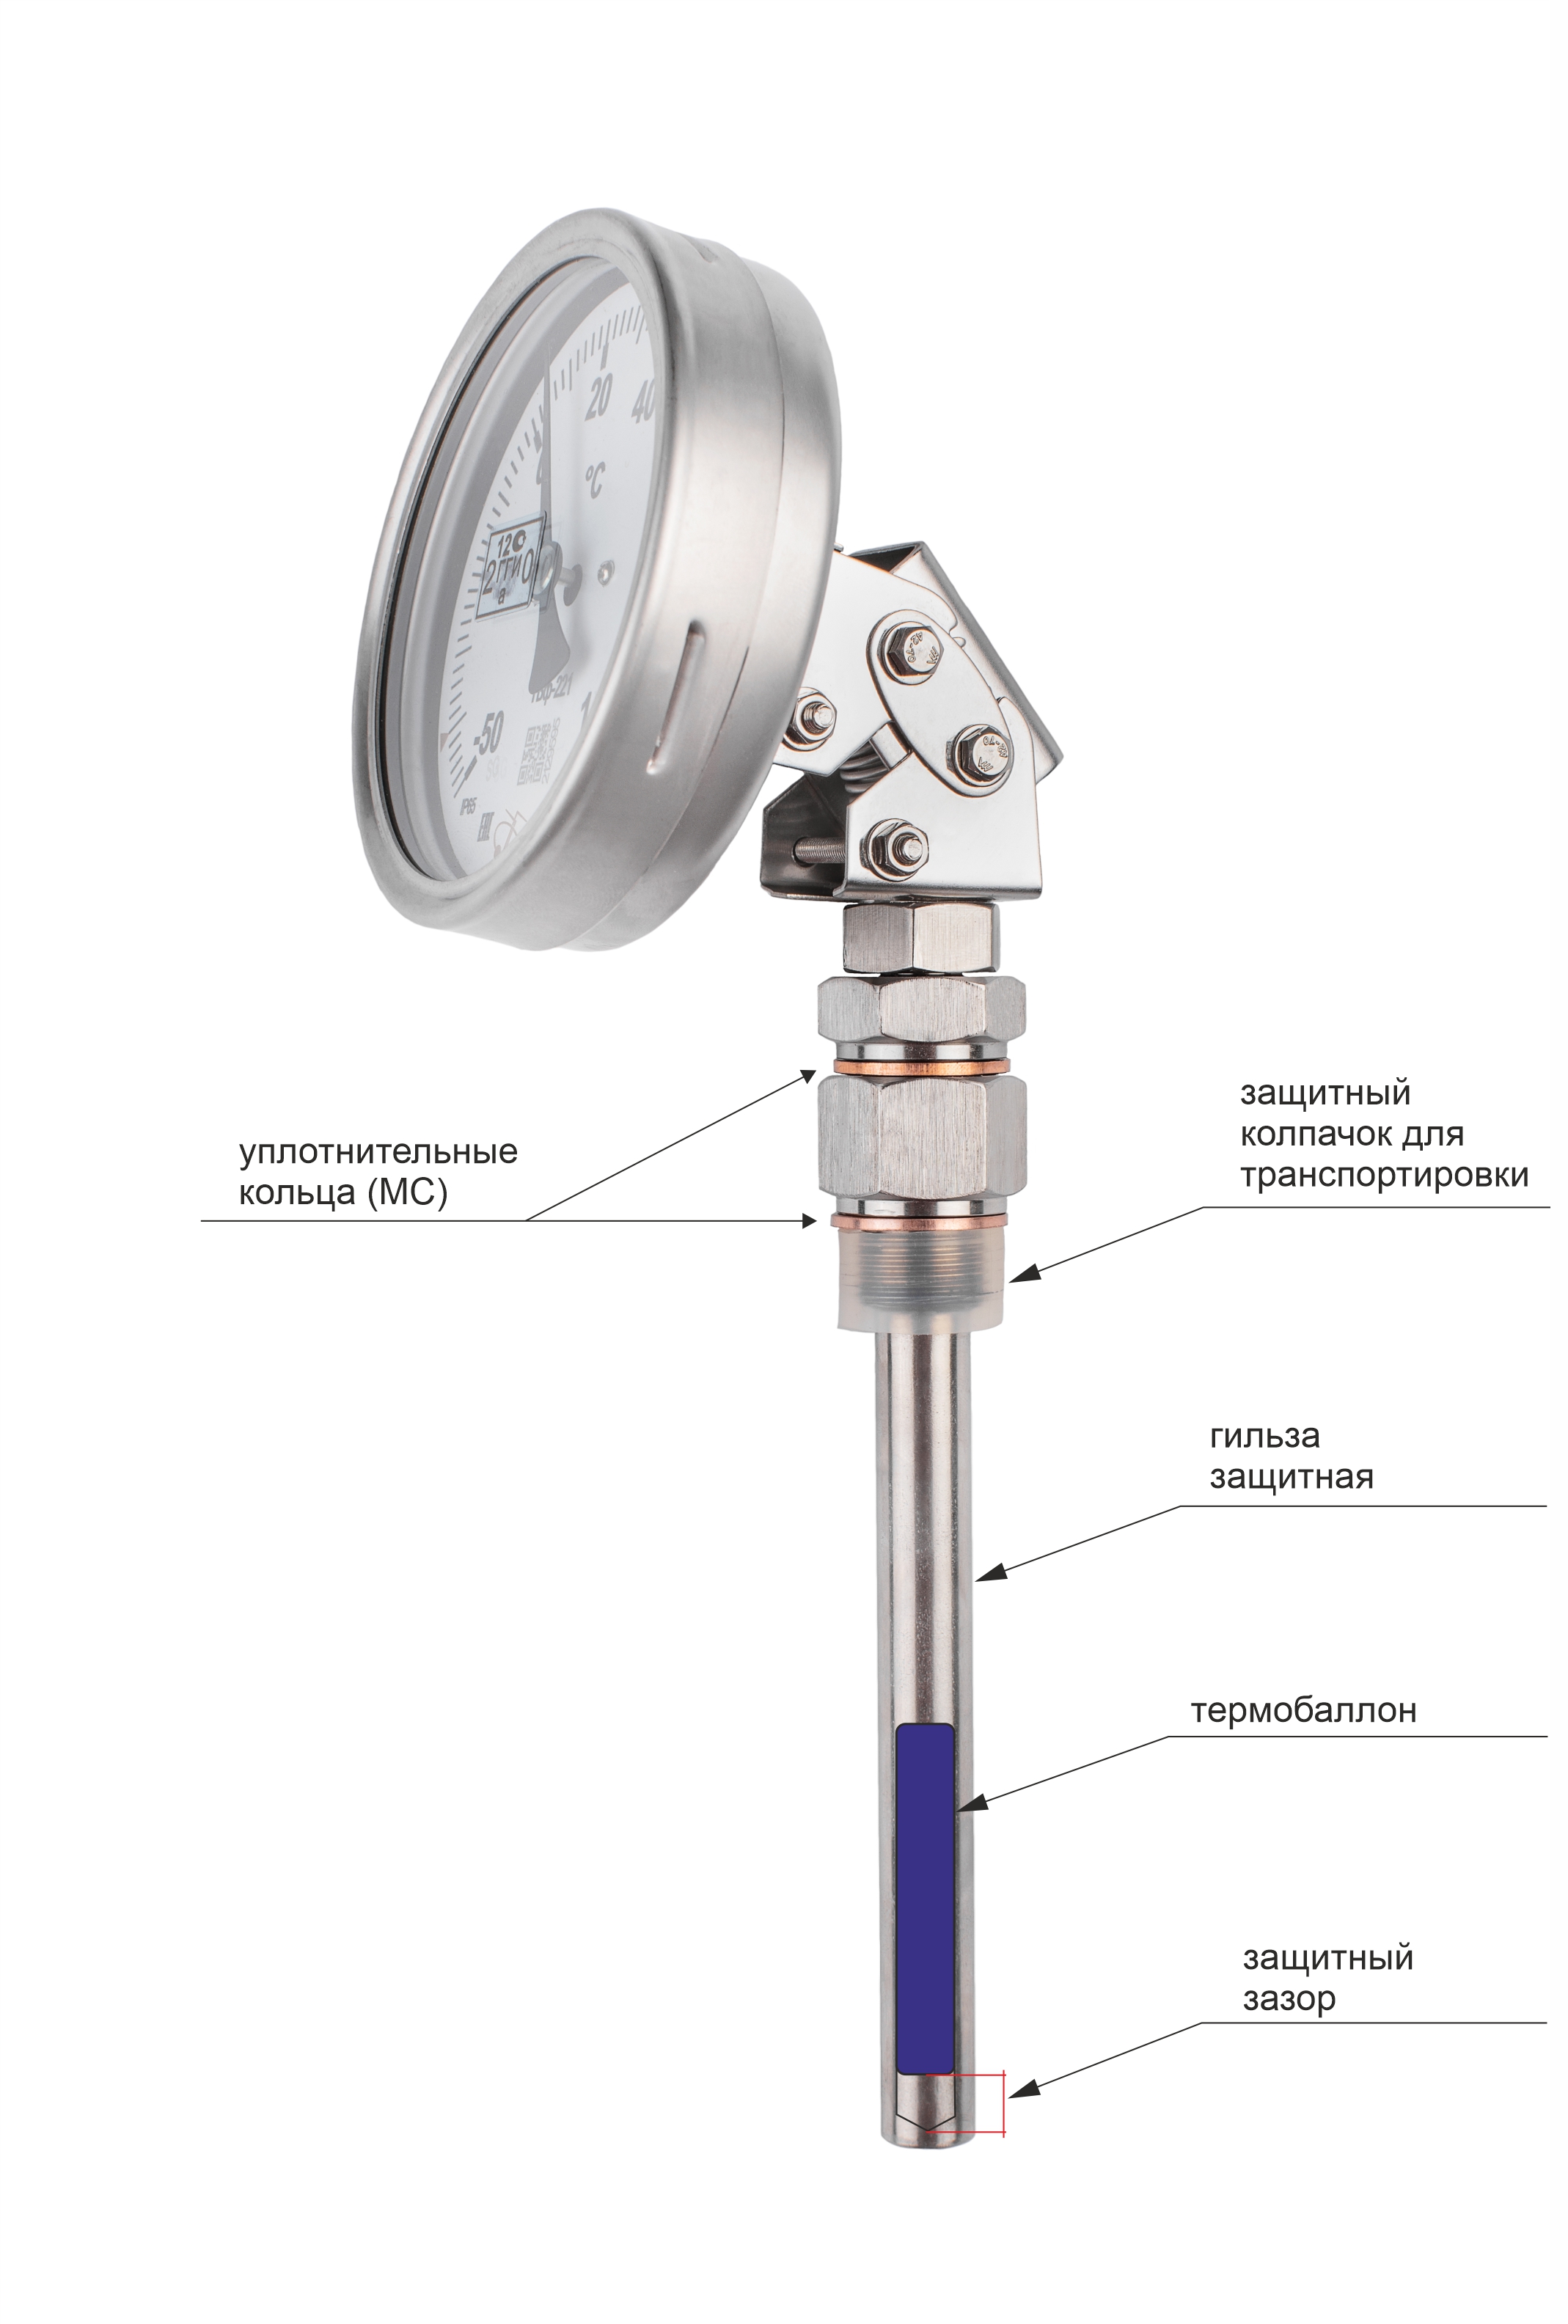 Термометры биметаллические коррозионностойкие ТБф-223 с возможностью гидрозаполнения (Диаметр: 80 мм, 100 мм, 160 мм)